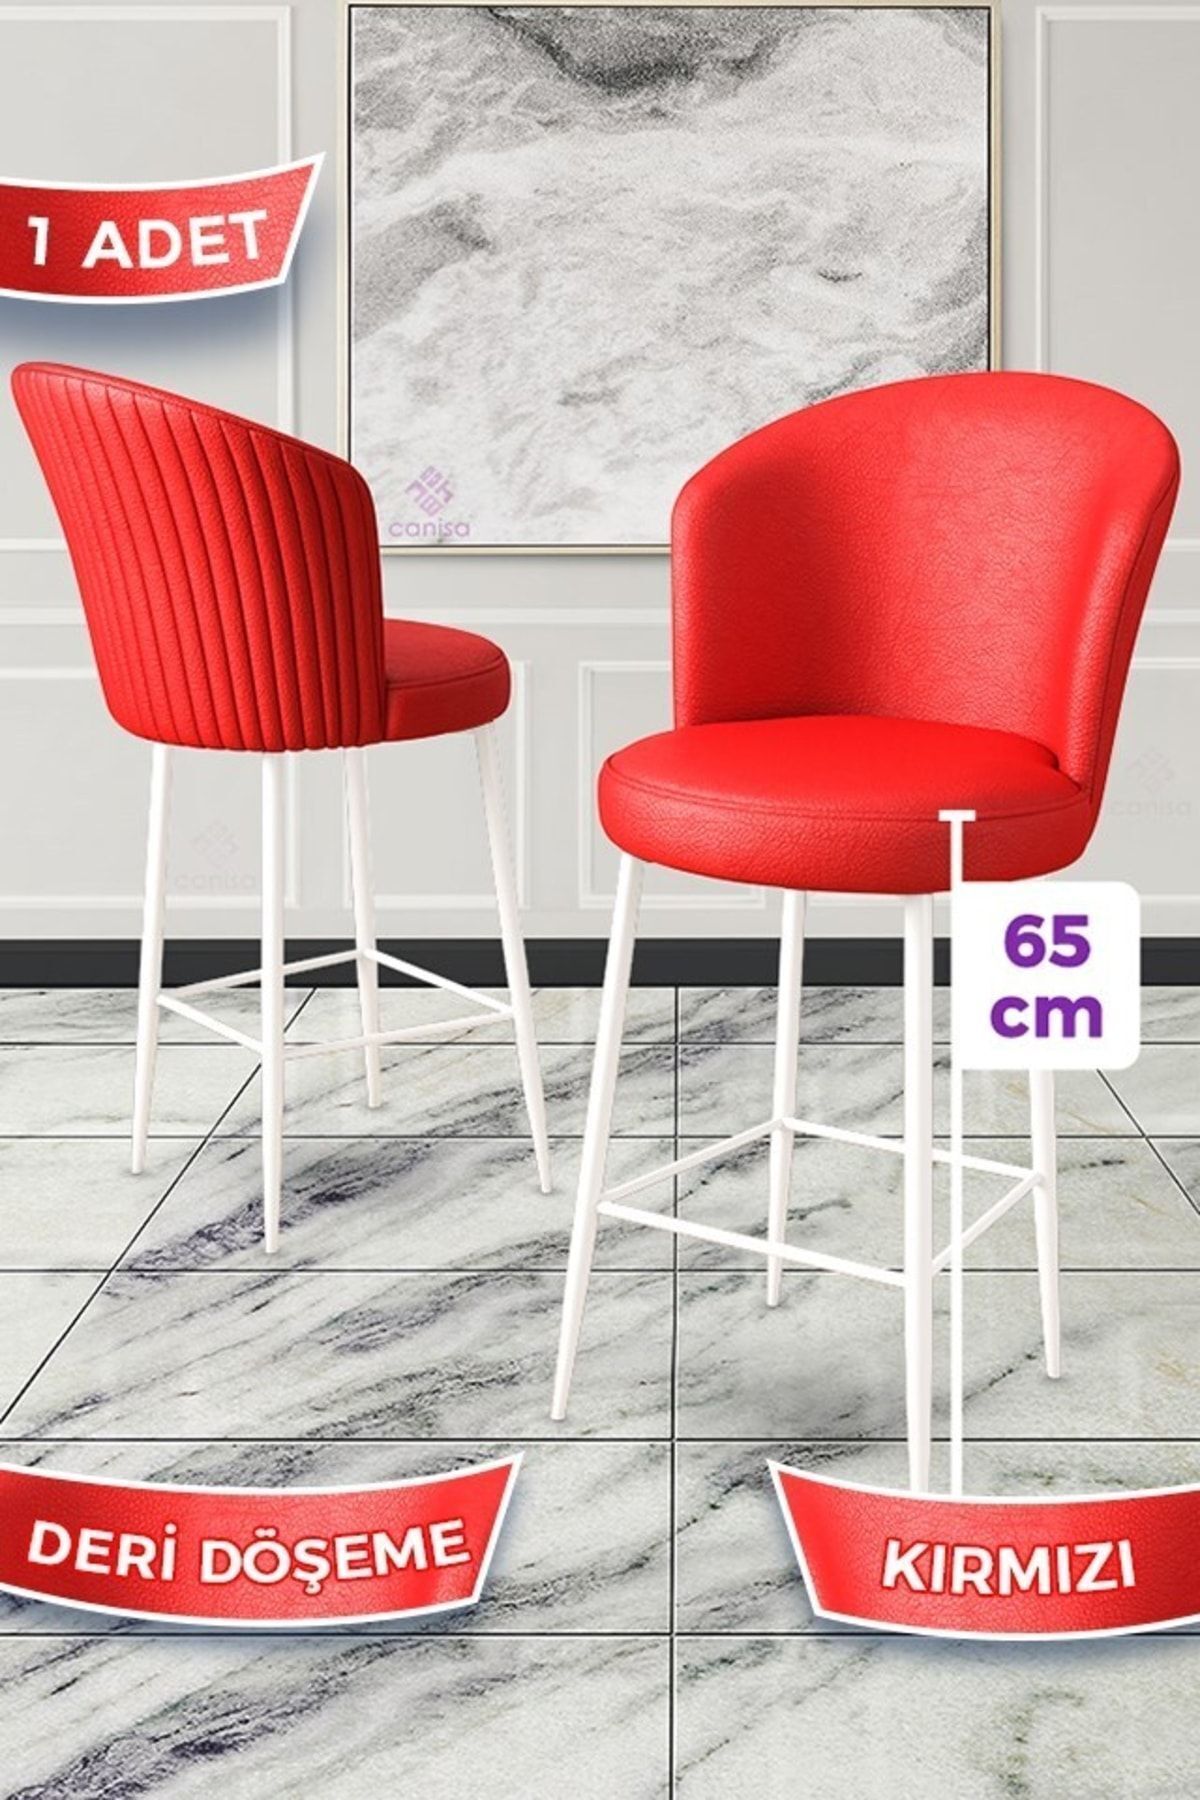 Canisa Rika Serisi 1 Adet Kırmızı 65 Cm Deri Bar Sandalyesi Beyaz Metal Ayaklı Ada Mutfak Bar Sandalyesi